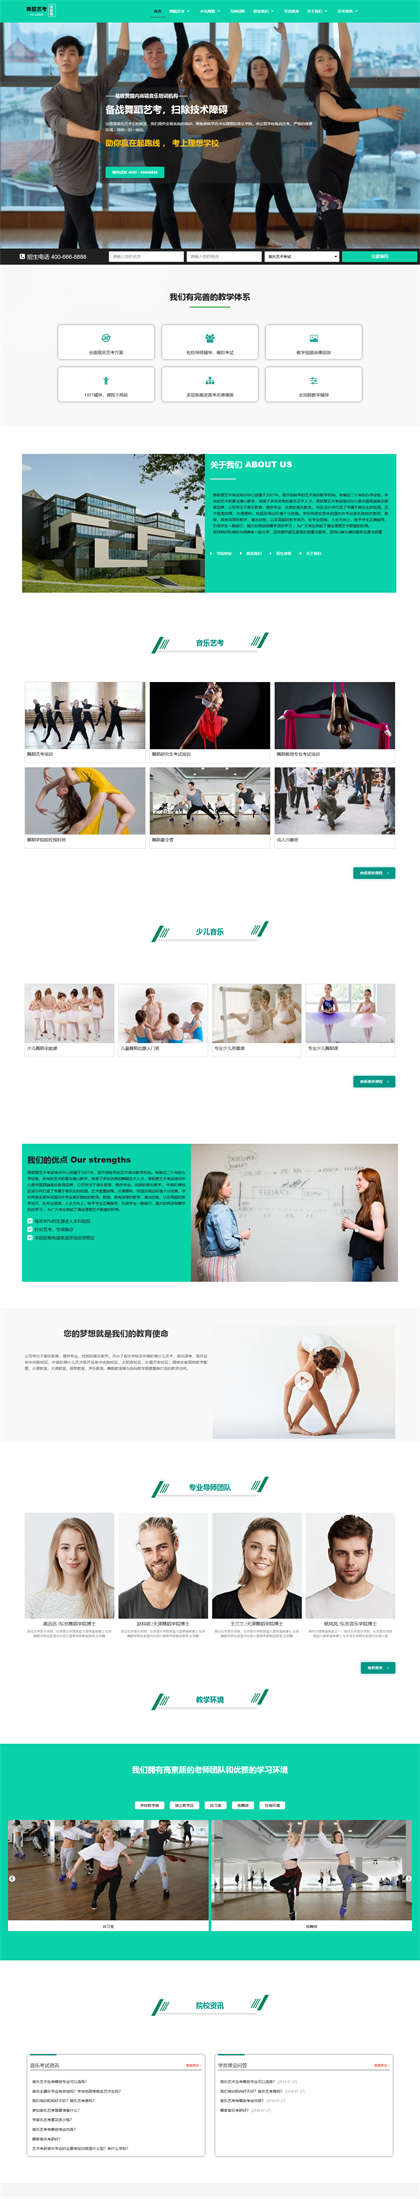 舞蹈艺术培训机构-舞蹈艺考培训-跳舞培训机构-舞蹈中心网站模板网站模板预览图片